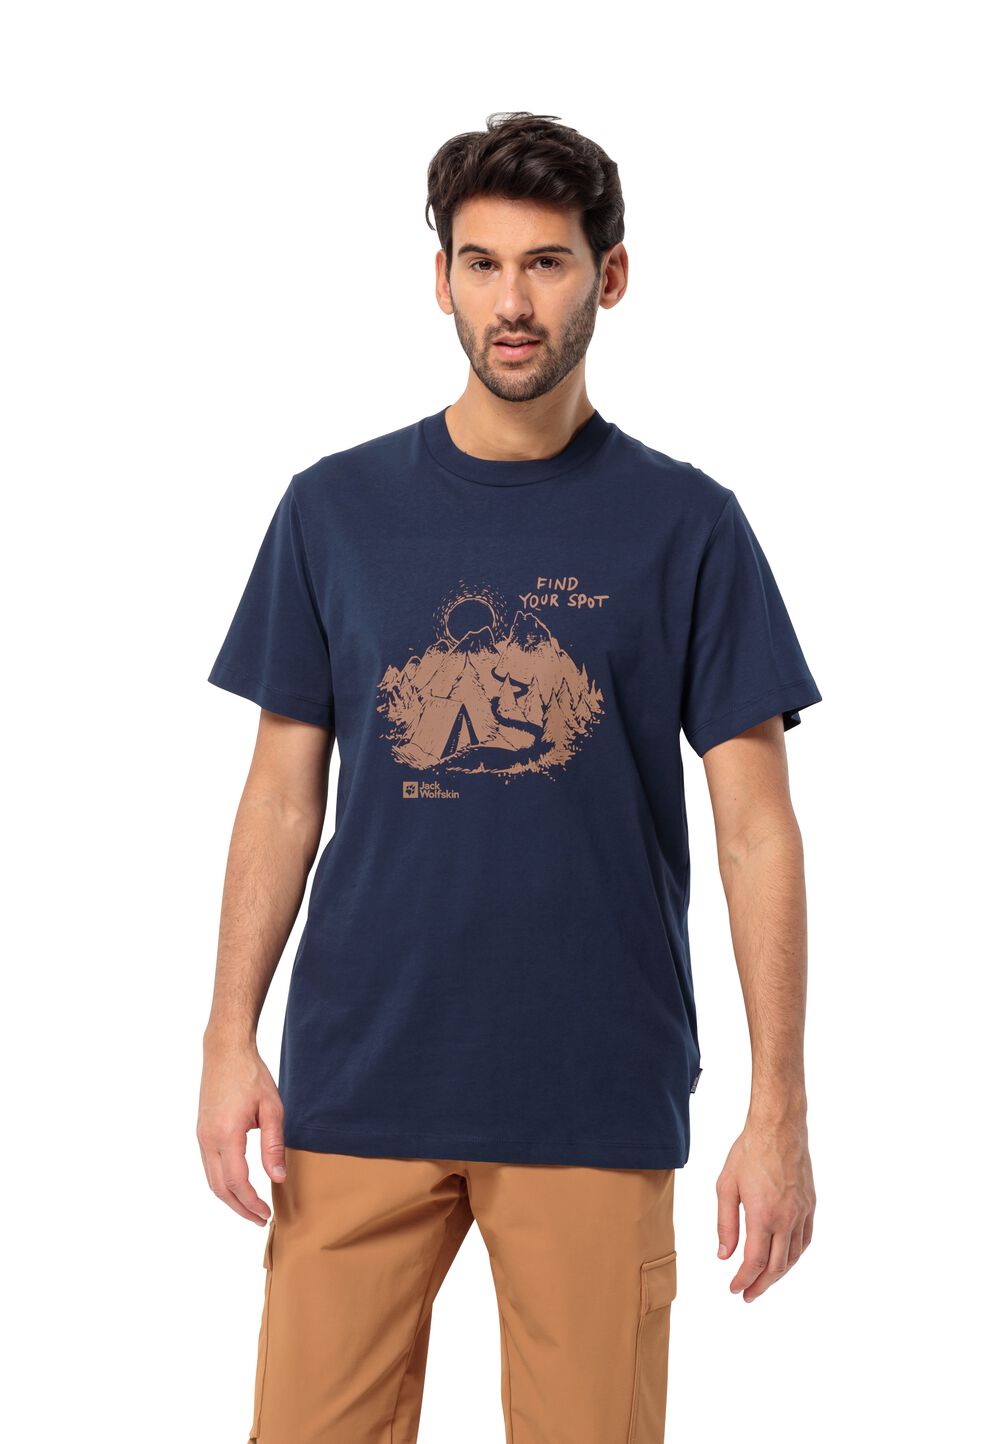 Jack Wolfskin T-Shirt aus Bio-Baumwolle Herren Find Your Spot T-Shirt Men M blau night blue von Jack Wolfskin